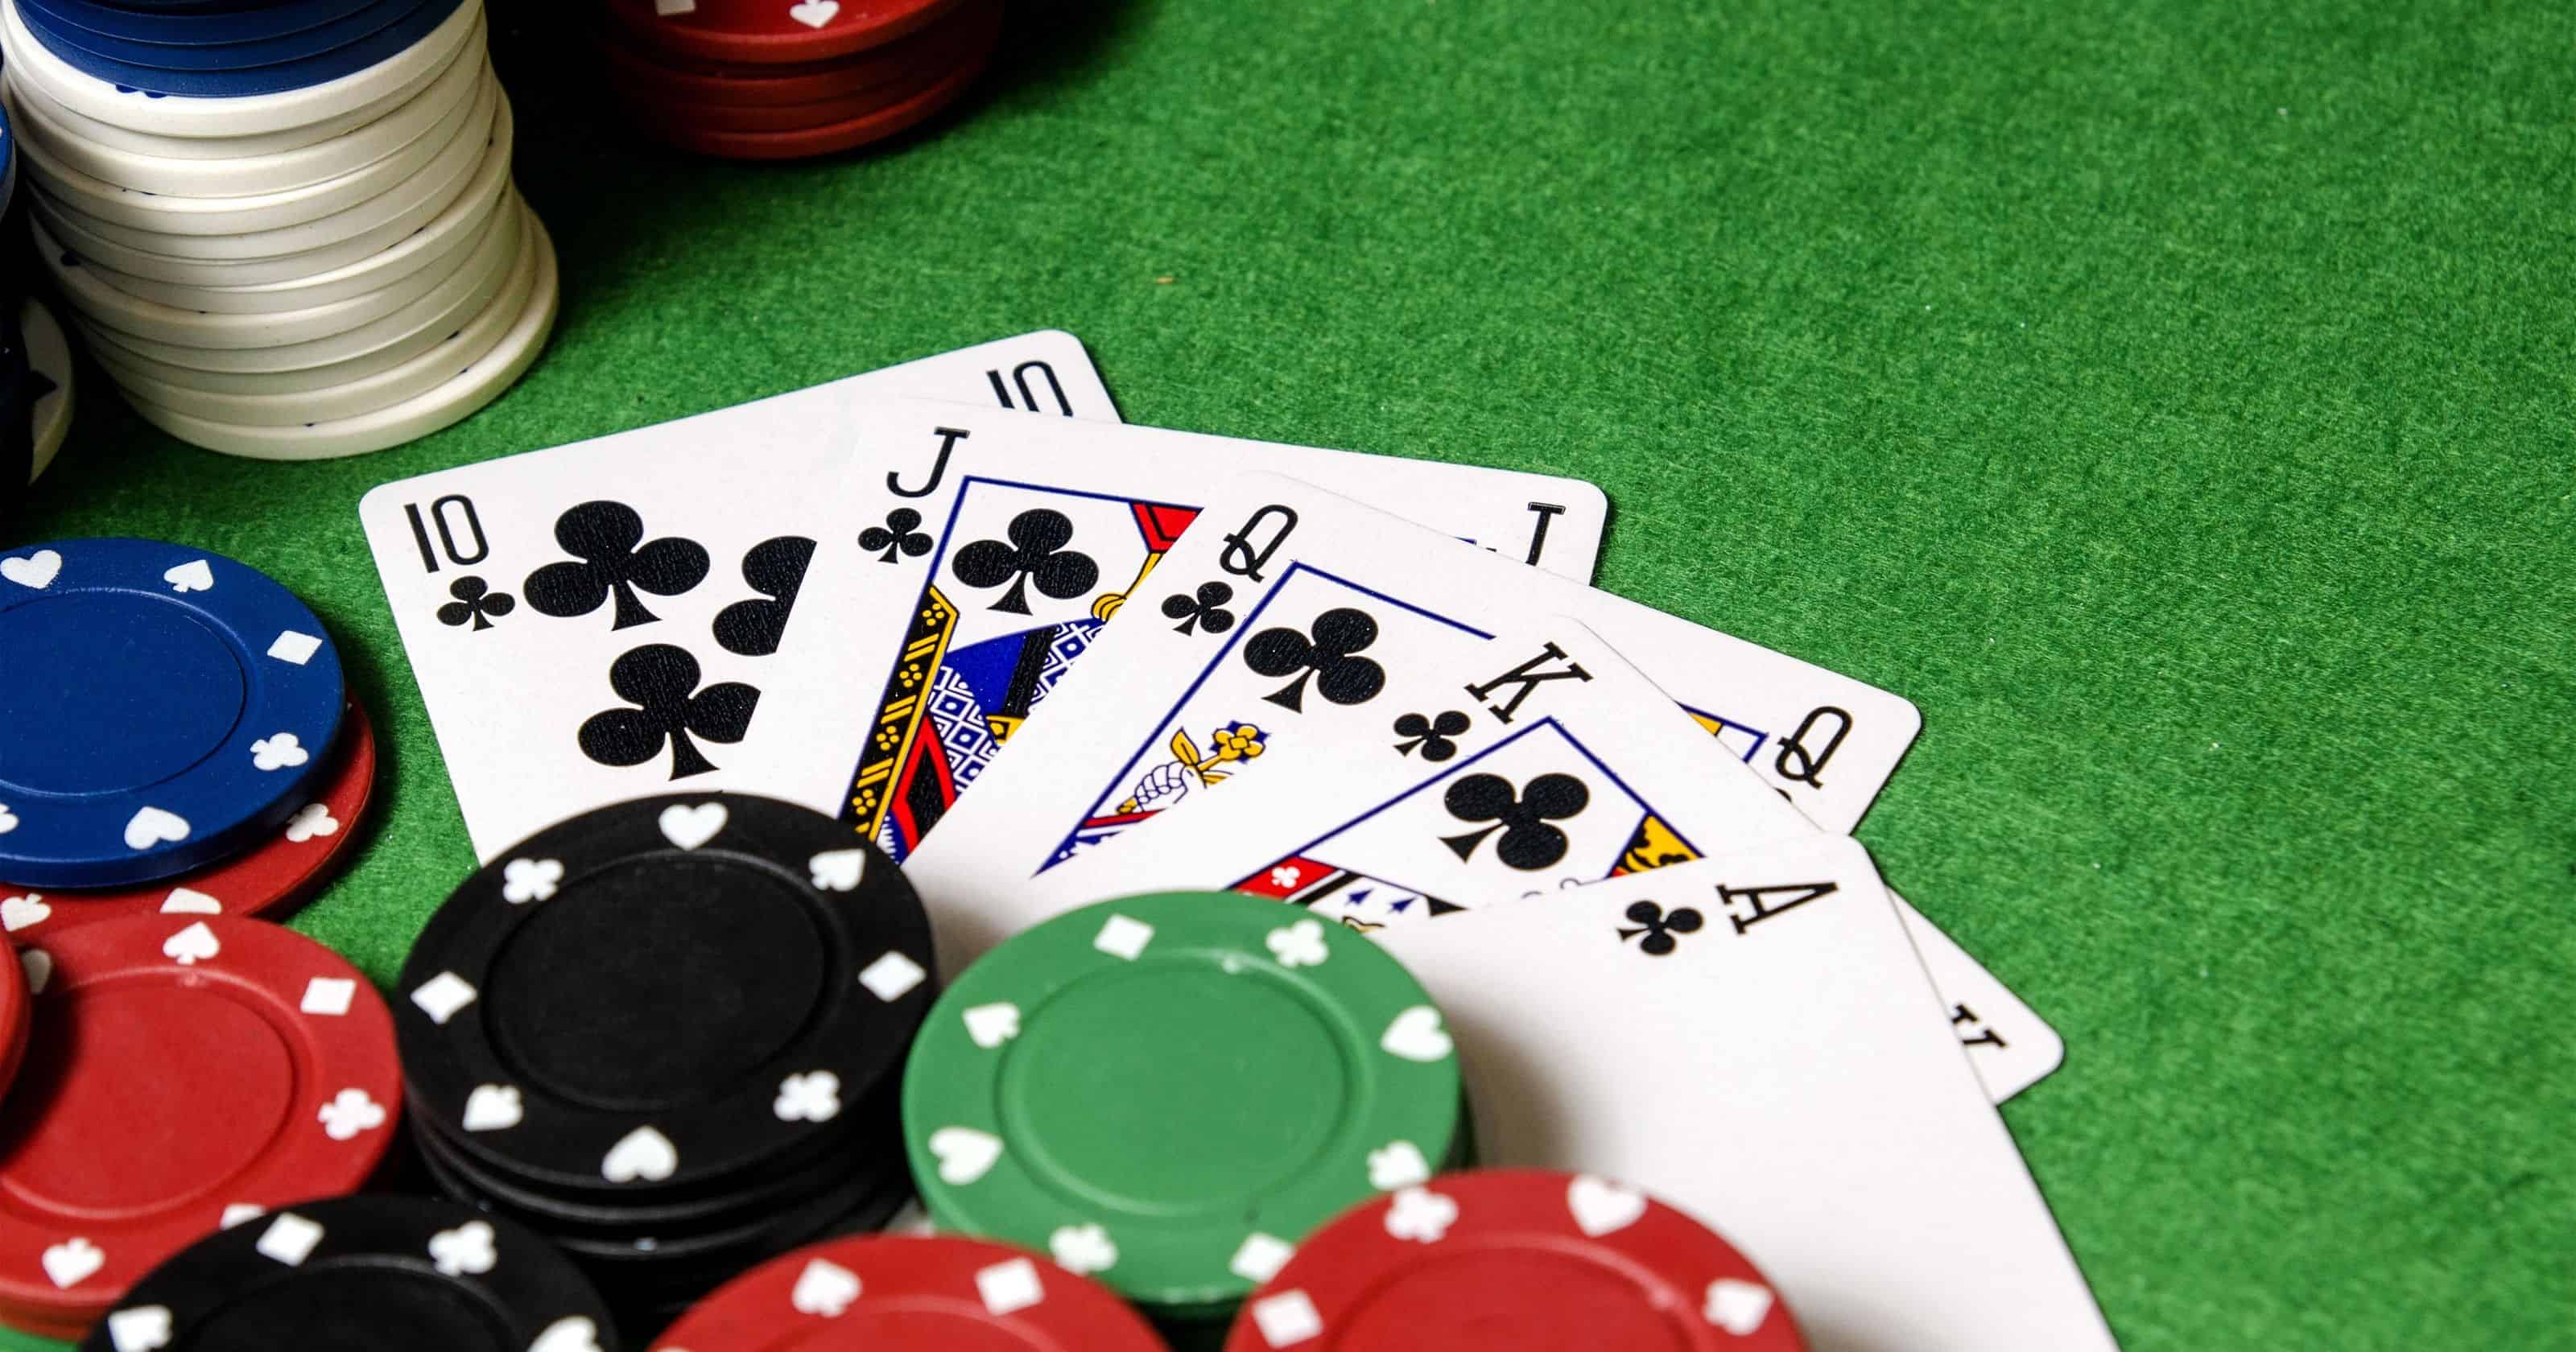 Co ton tai cach danh dung trong game Poker hay khong - Hinh 1